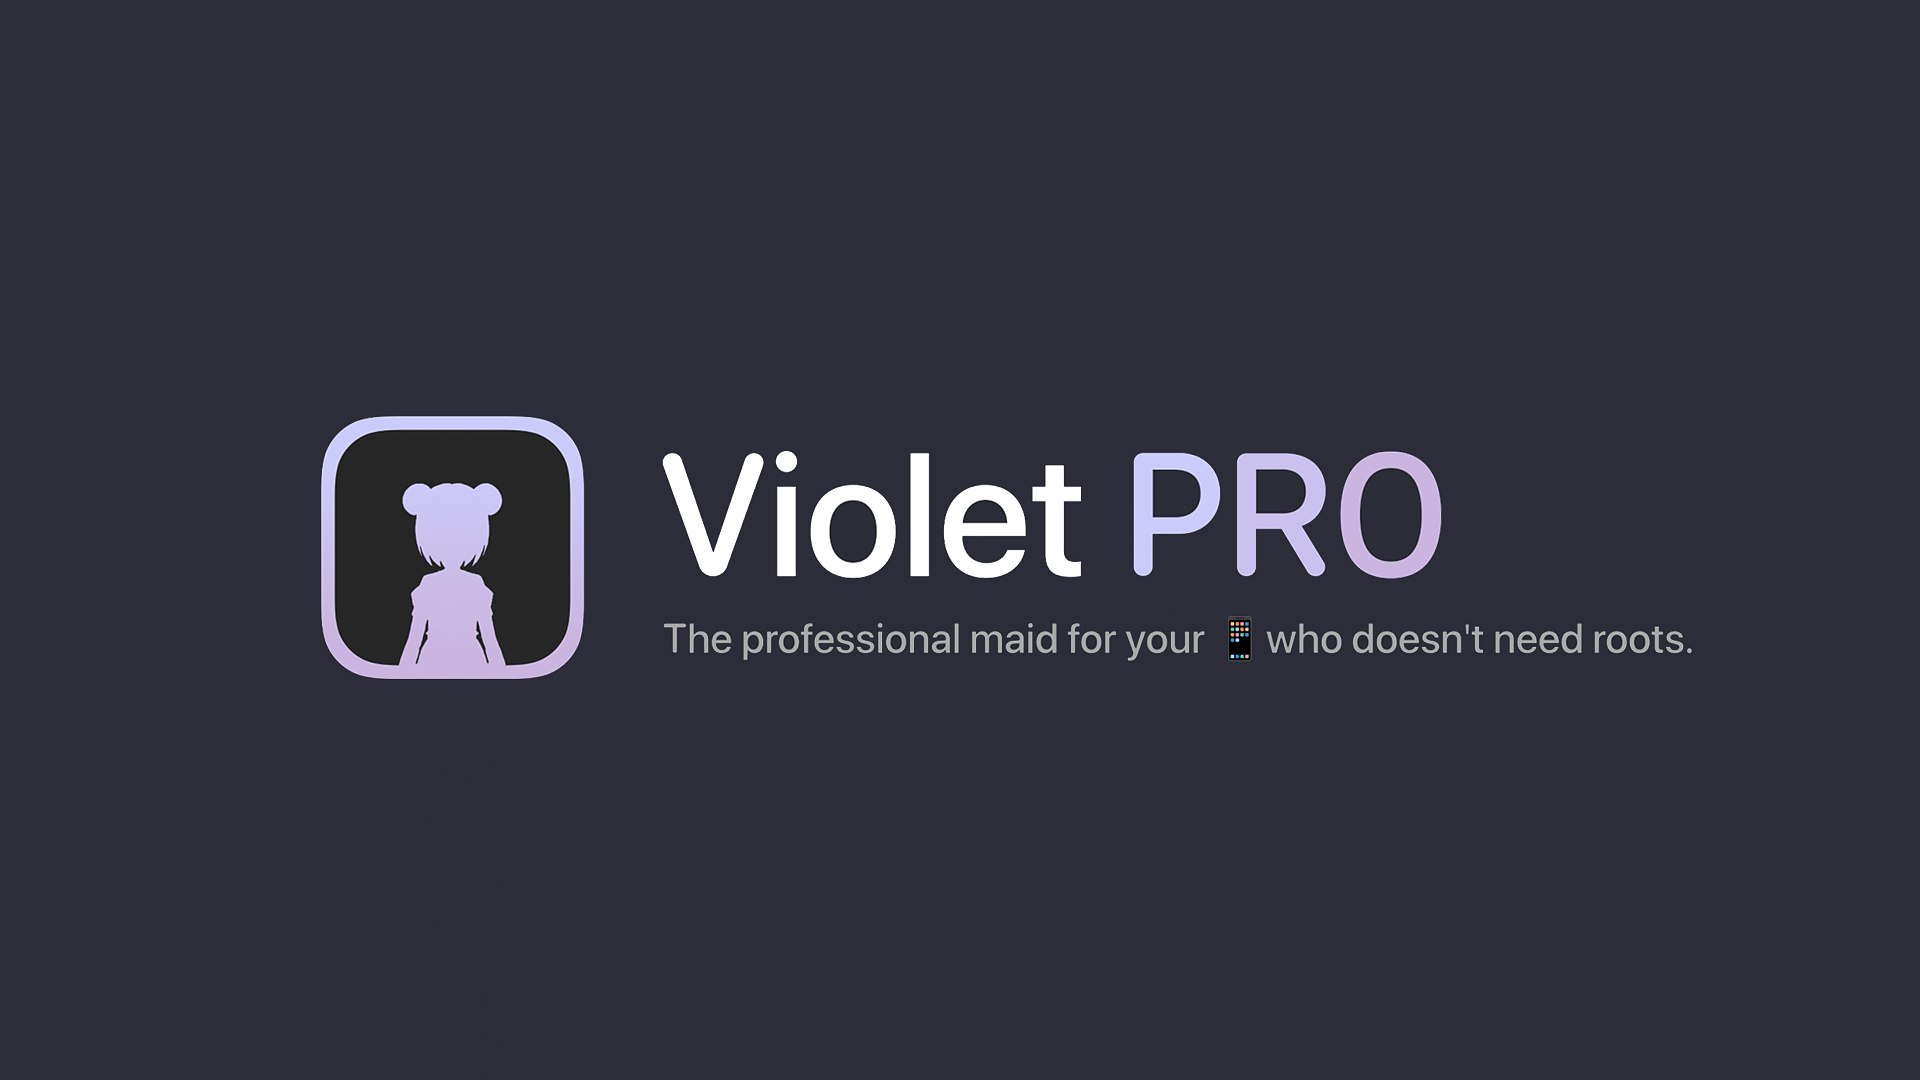 Violet Pro